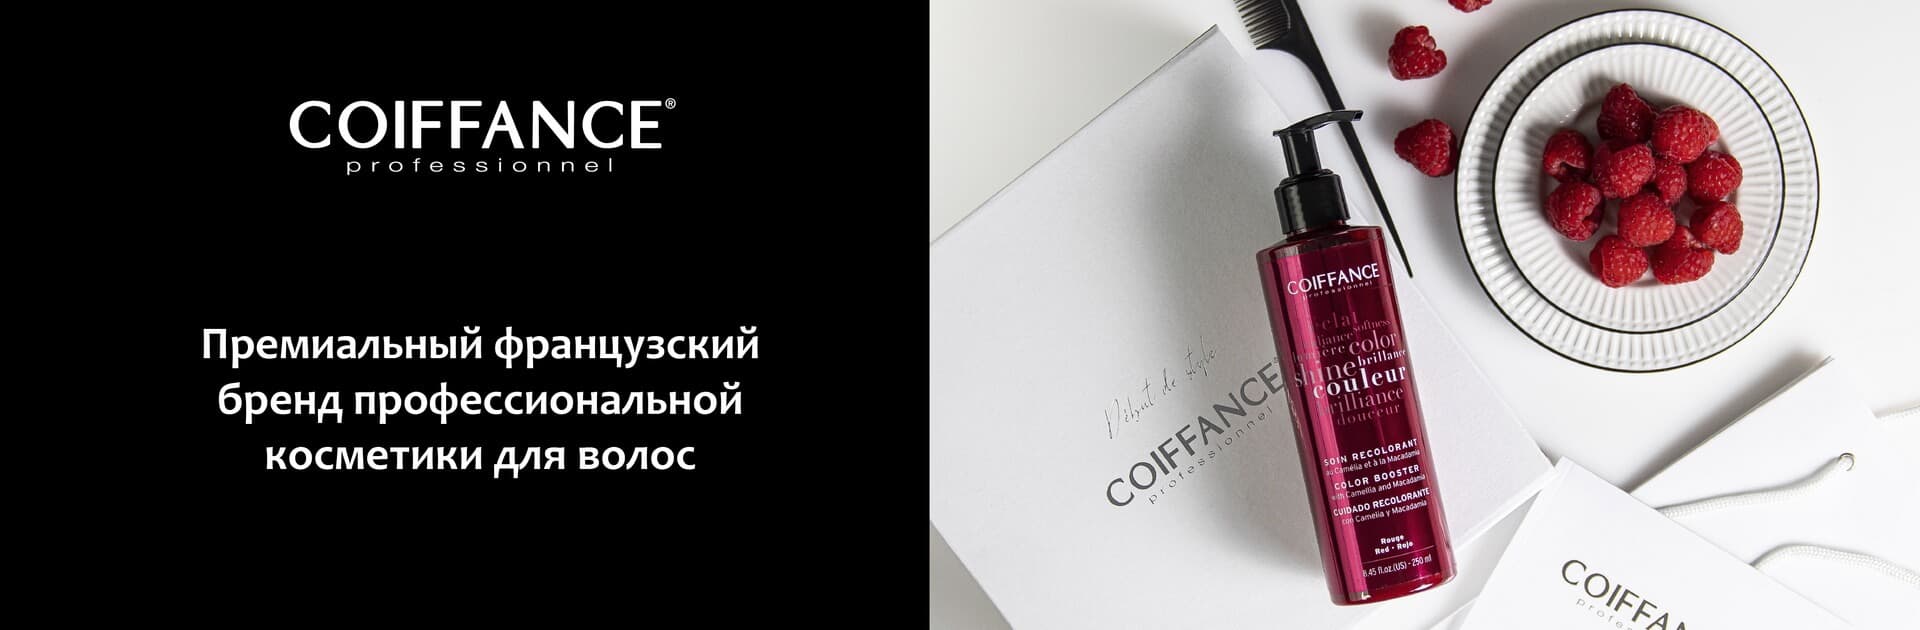 Coiffance Professionel - премиальный французский бренд профессиональной косметики для аолос